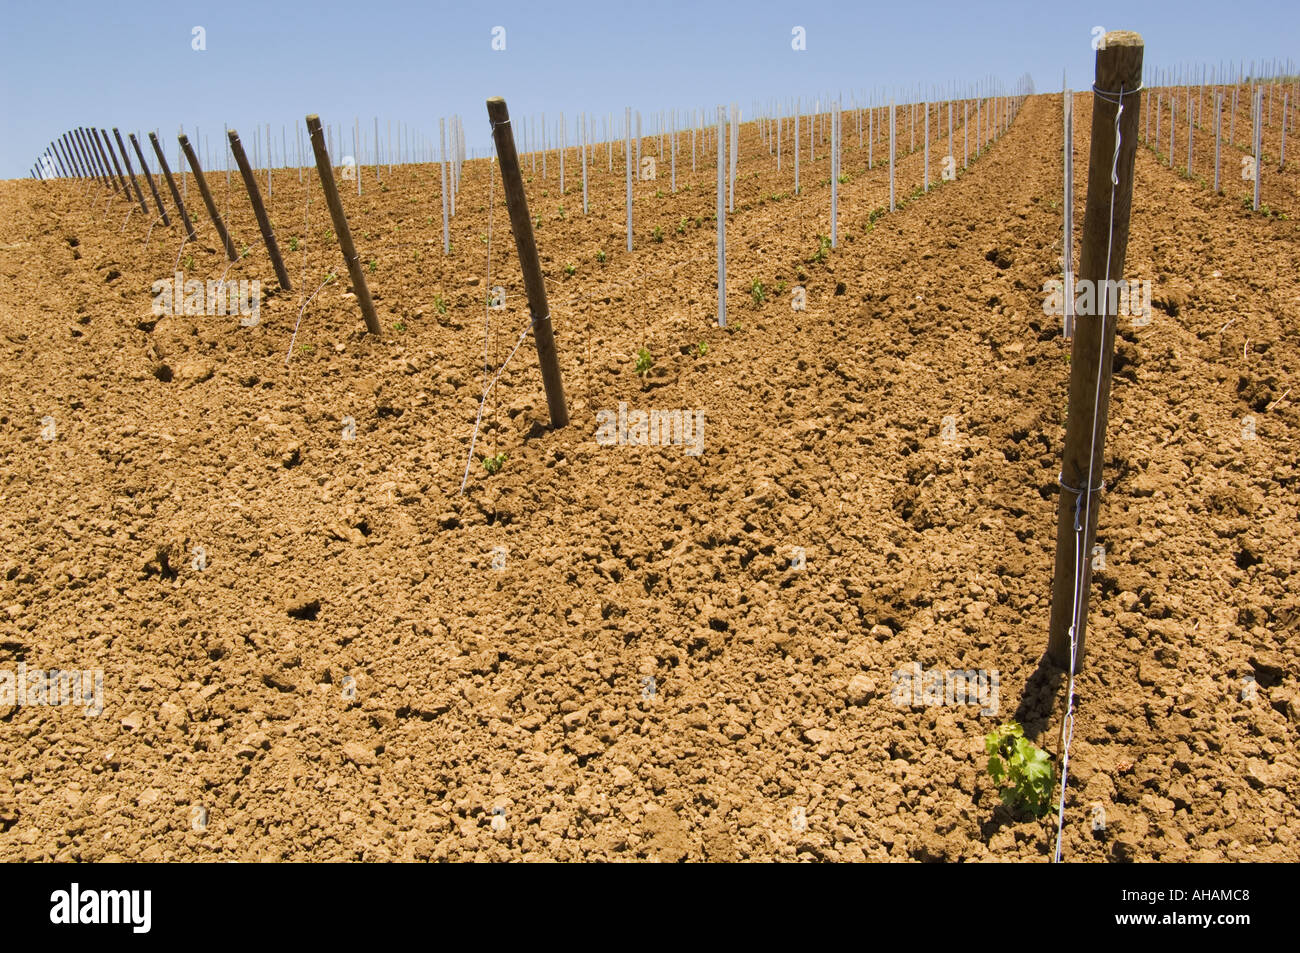 Horizontale Farbbild eines abgesteckt, Weinbergs mit kleine Sämlinge, die gerade aus dem Boden aufspringen Stockfoto